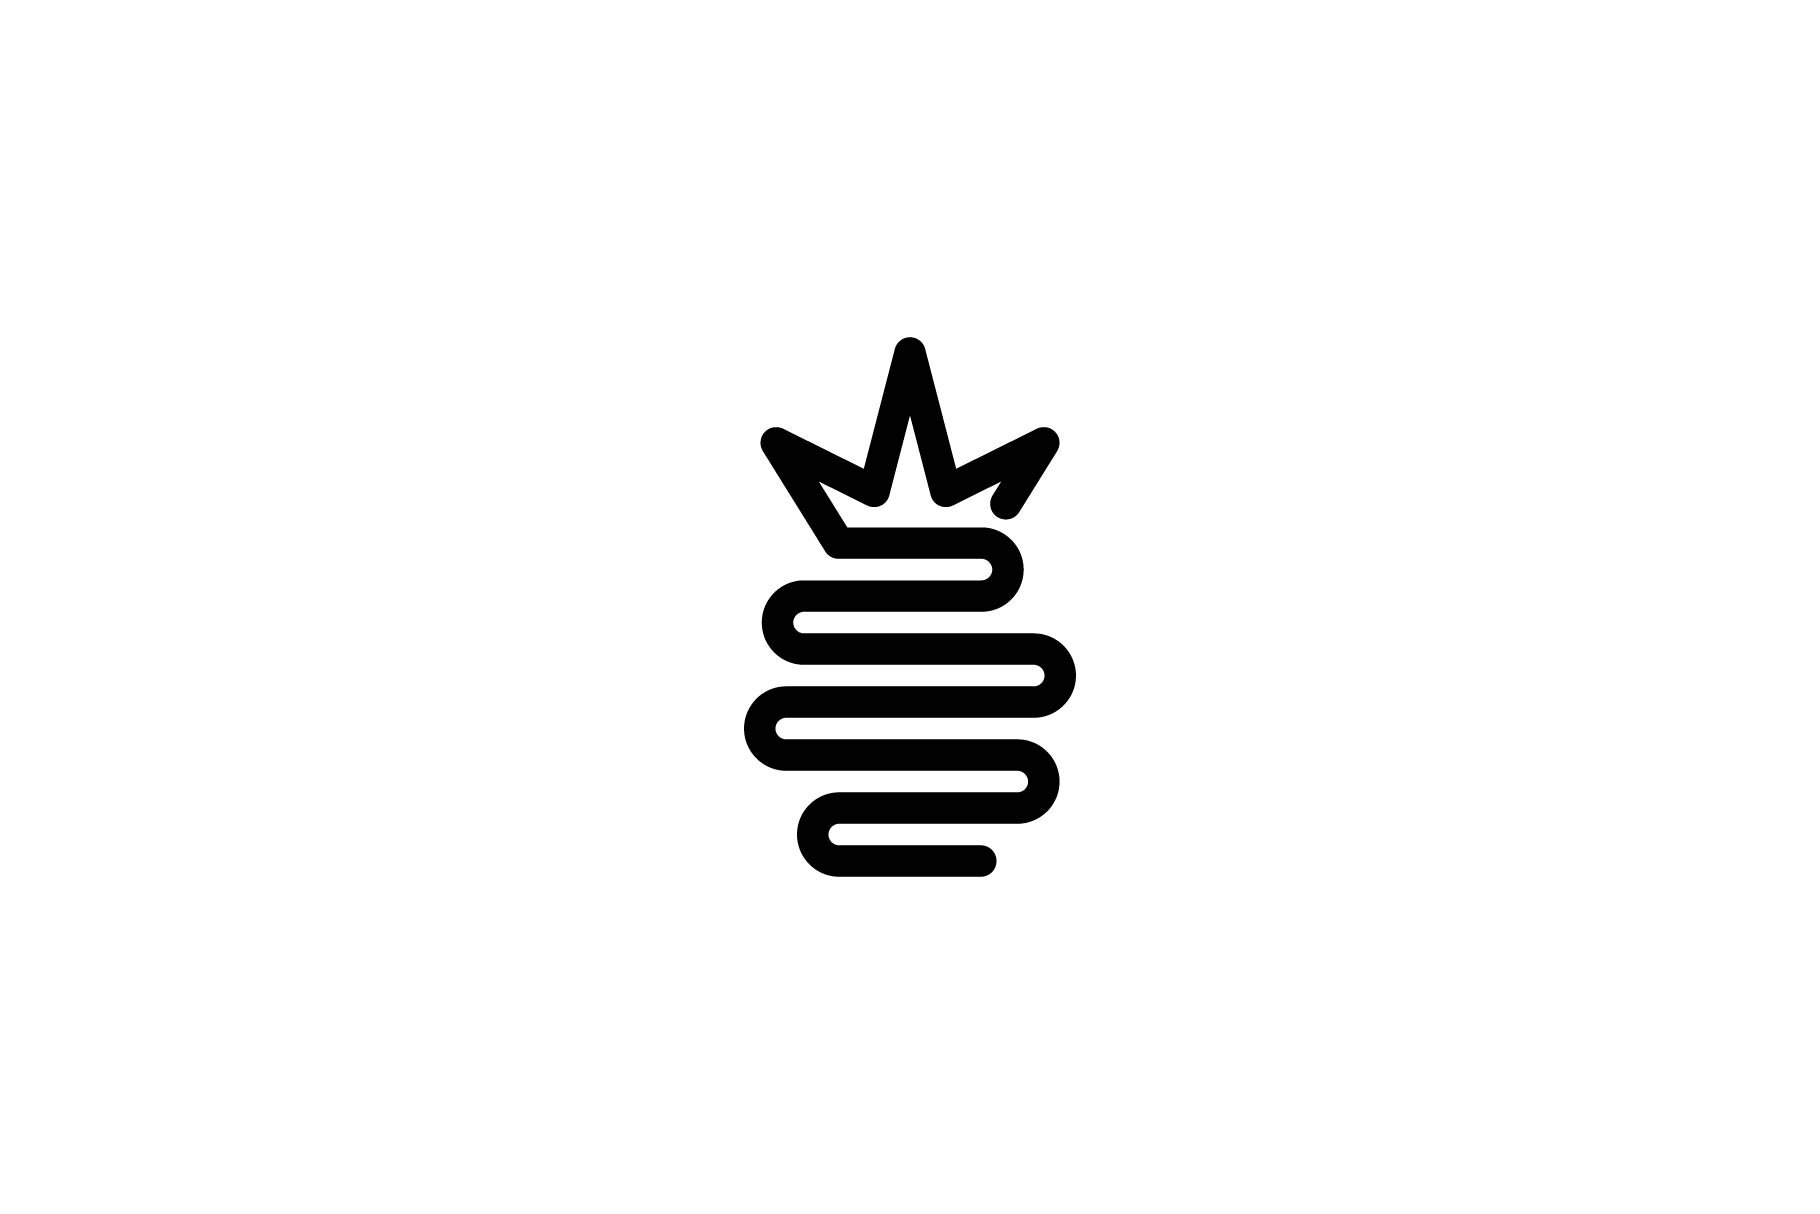 line art pineapple logo cover image.